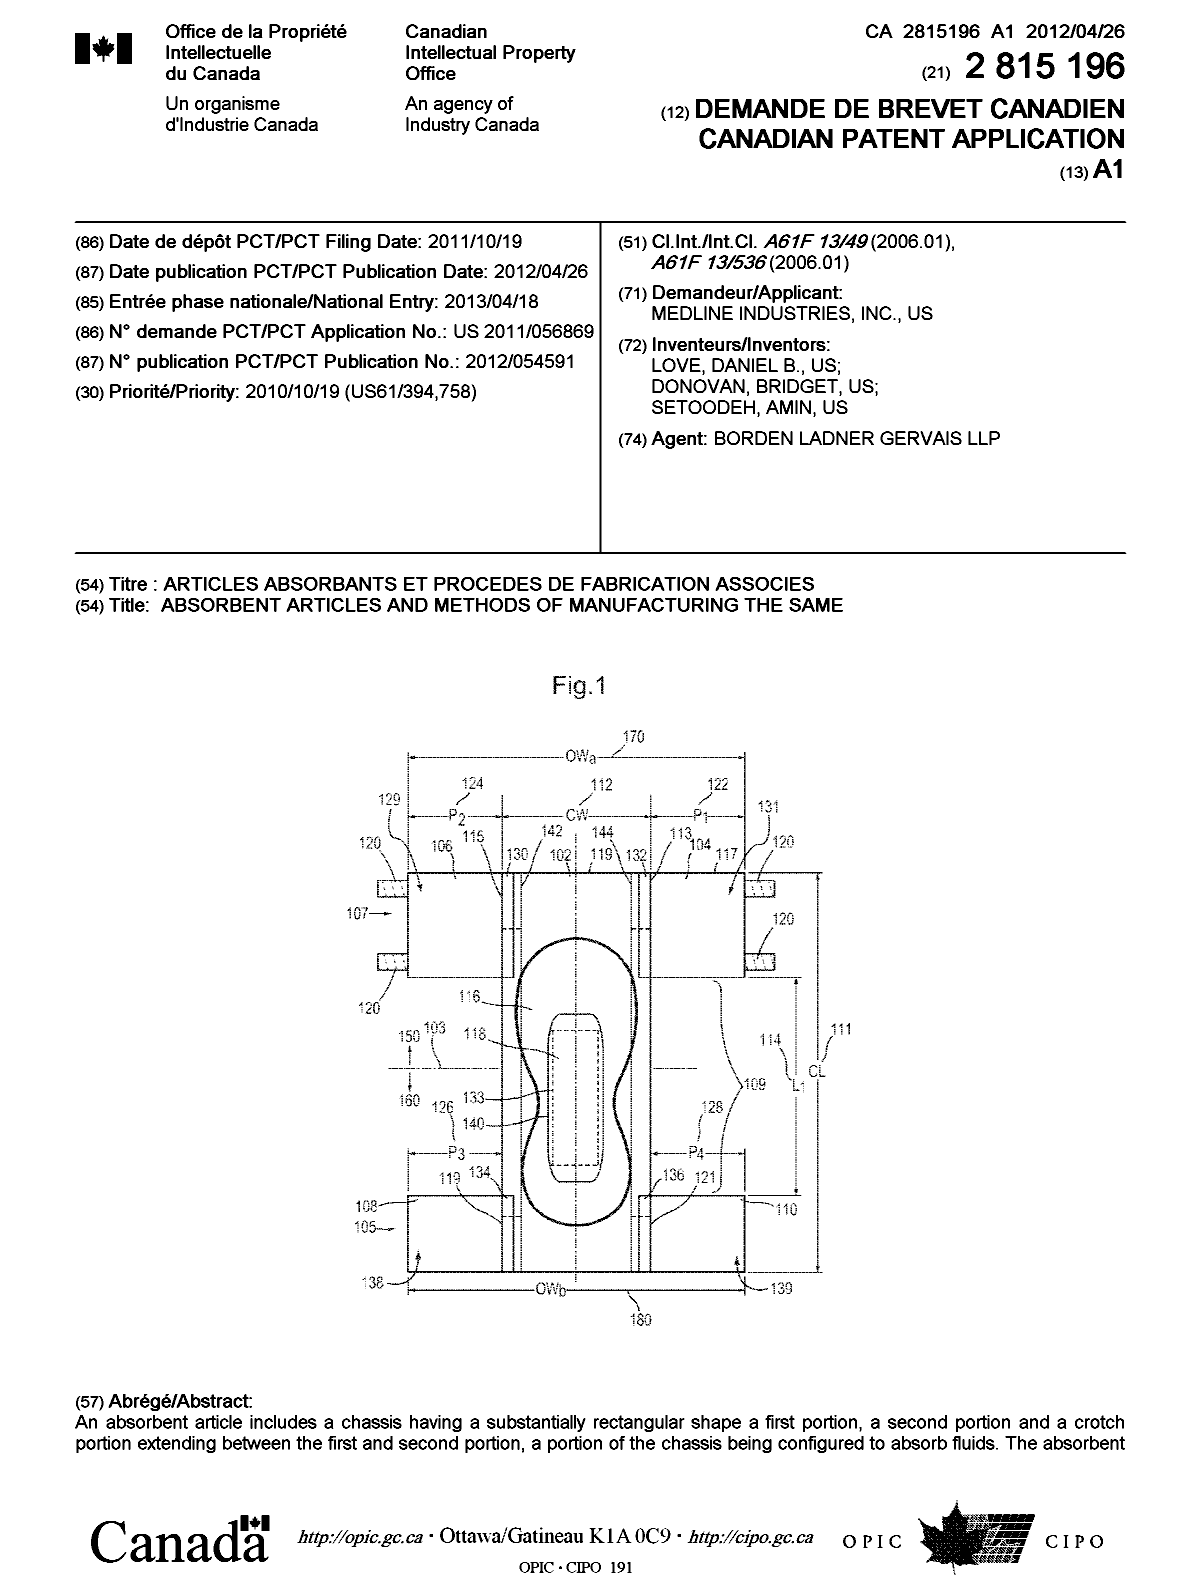 Document de brevet canadien 2815196. Page couverture 20130627. Image 1 de 2